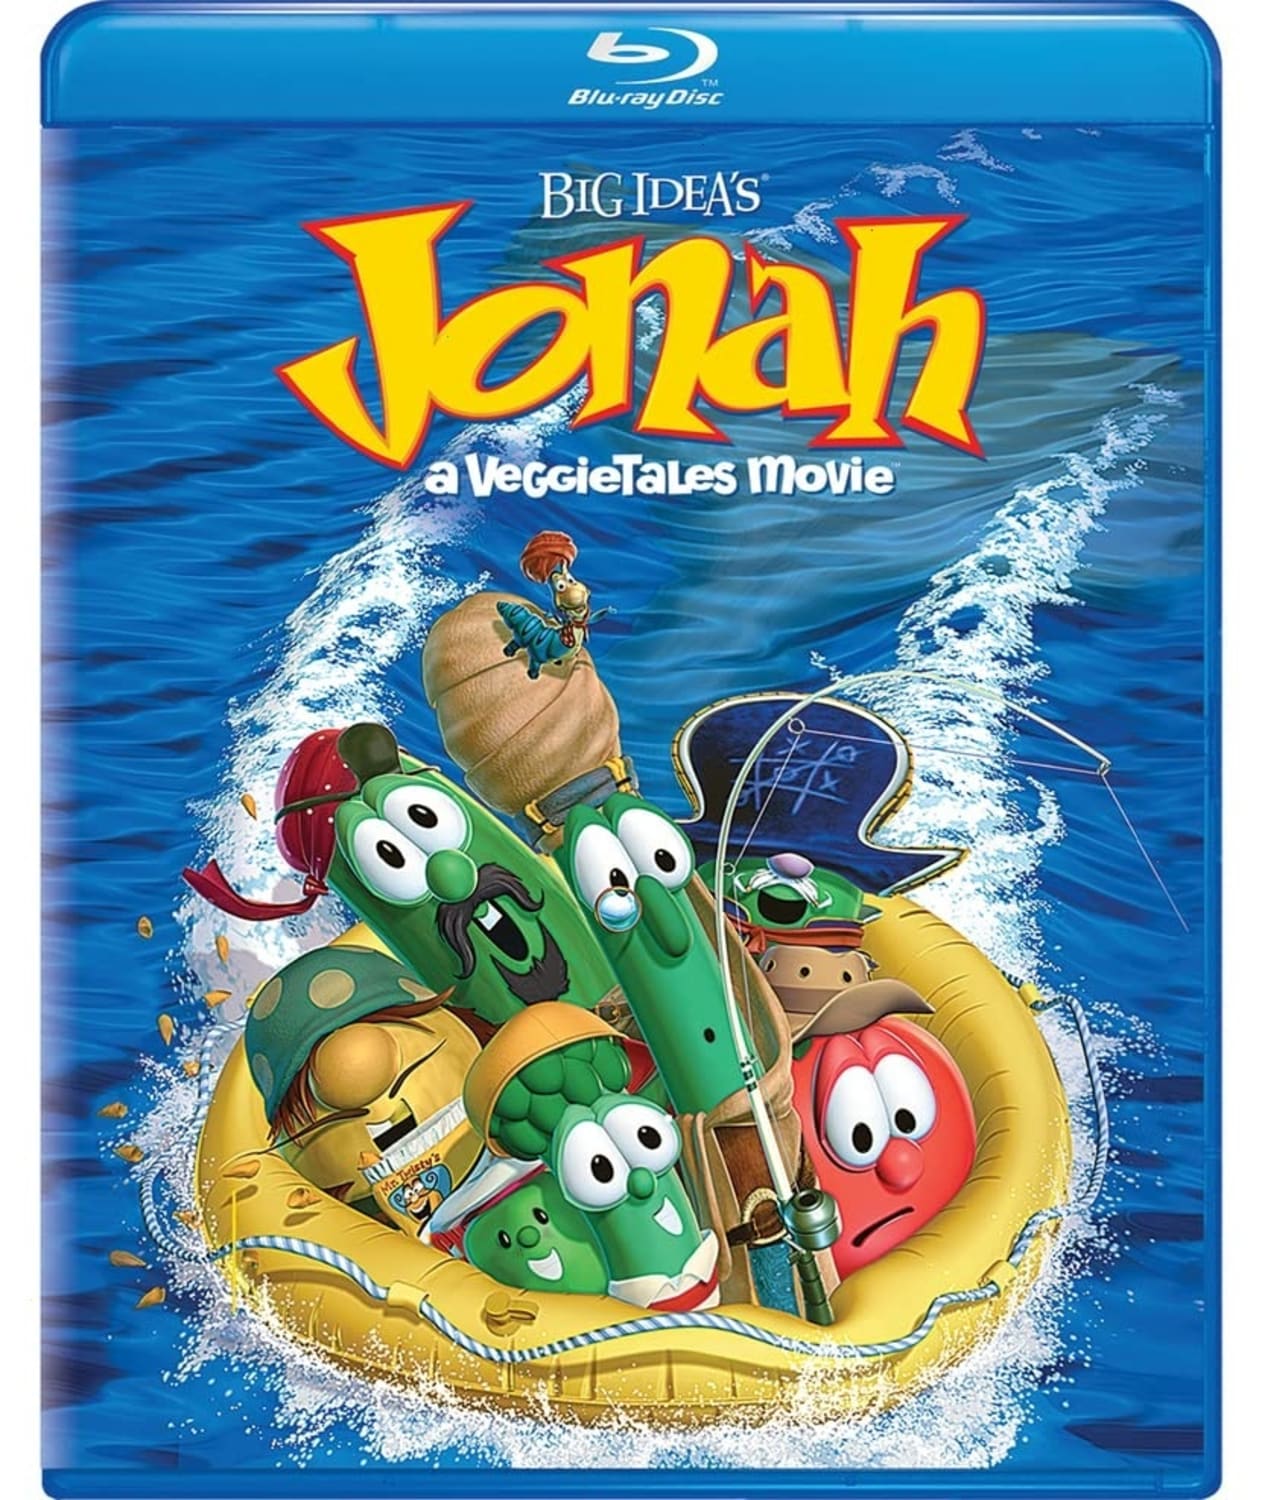 Jonah: A VeggieTales Movie (Blu-ray) on MovieShack